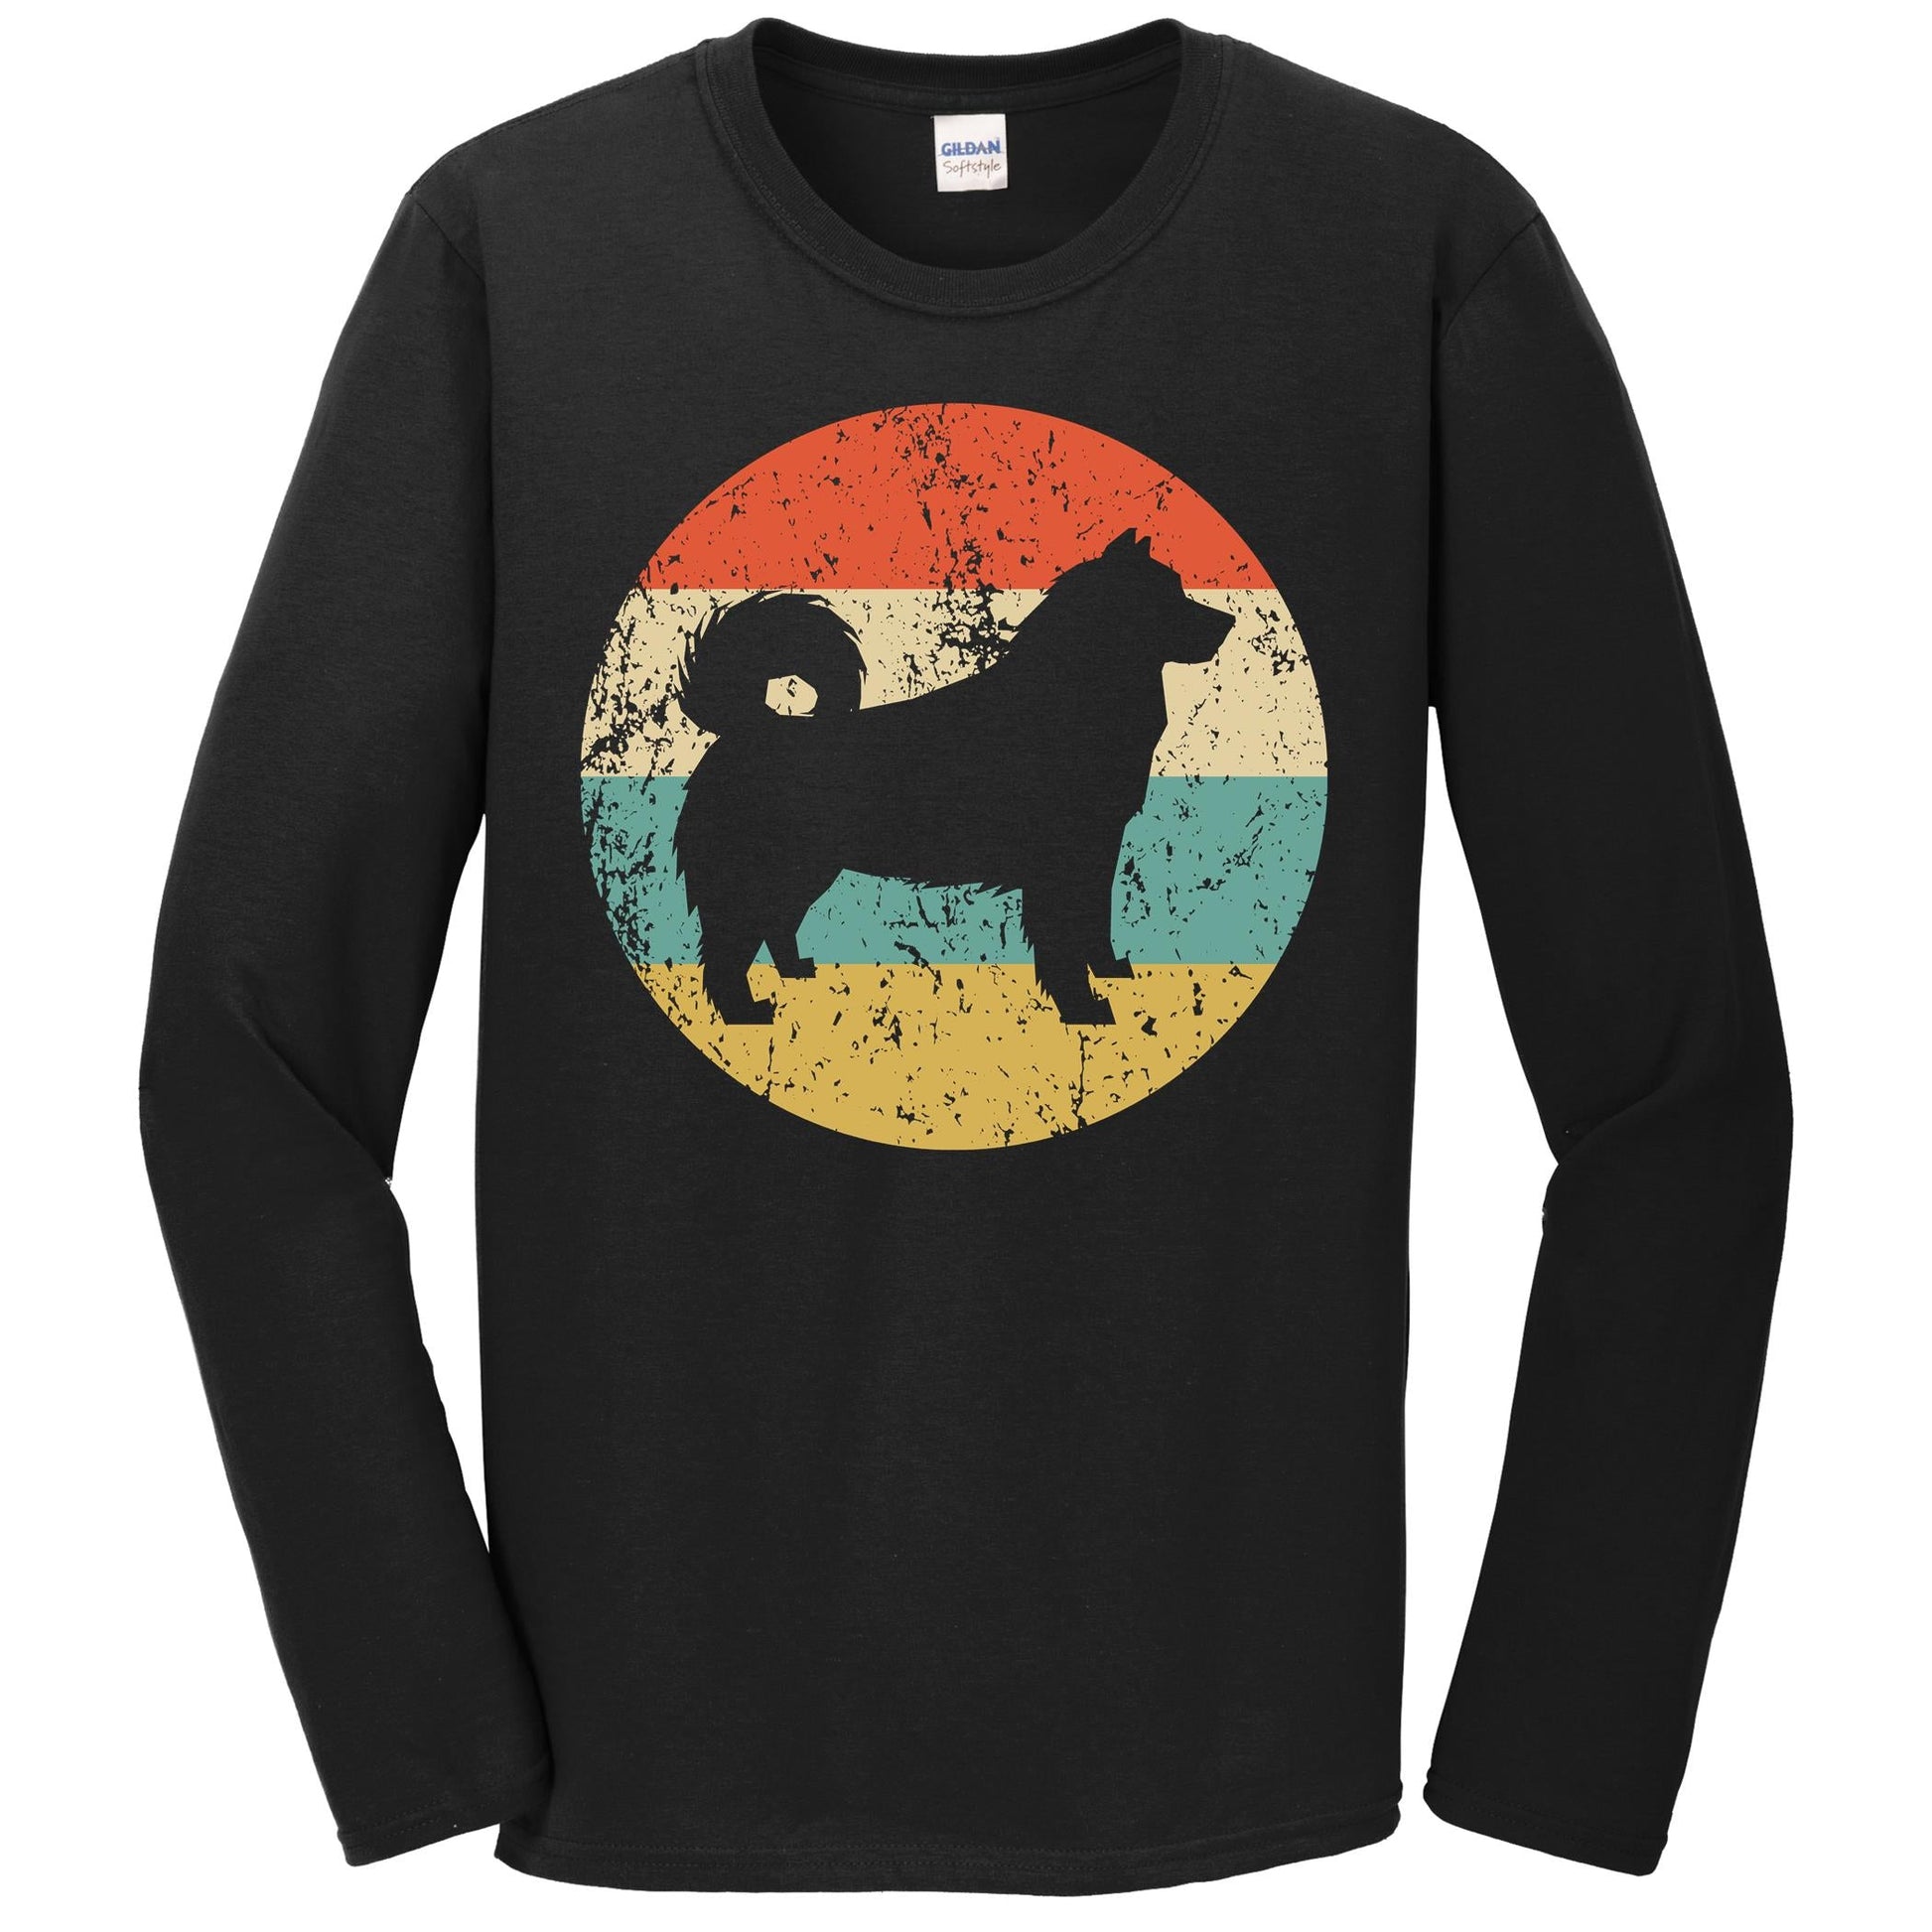 Alaskan Malamute Shirt - Retro Alaskan Malamute Dog Long Sleeve T-Shirt